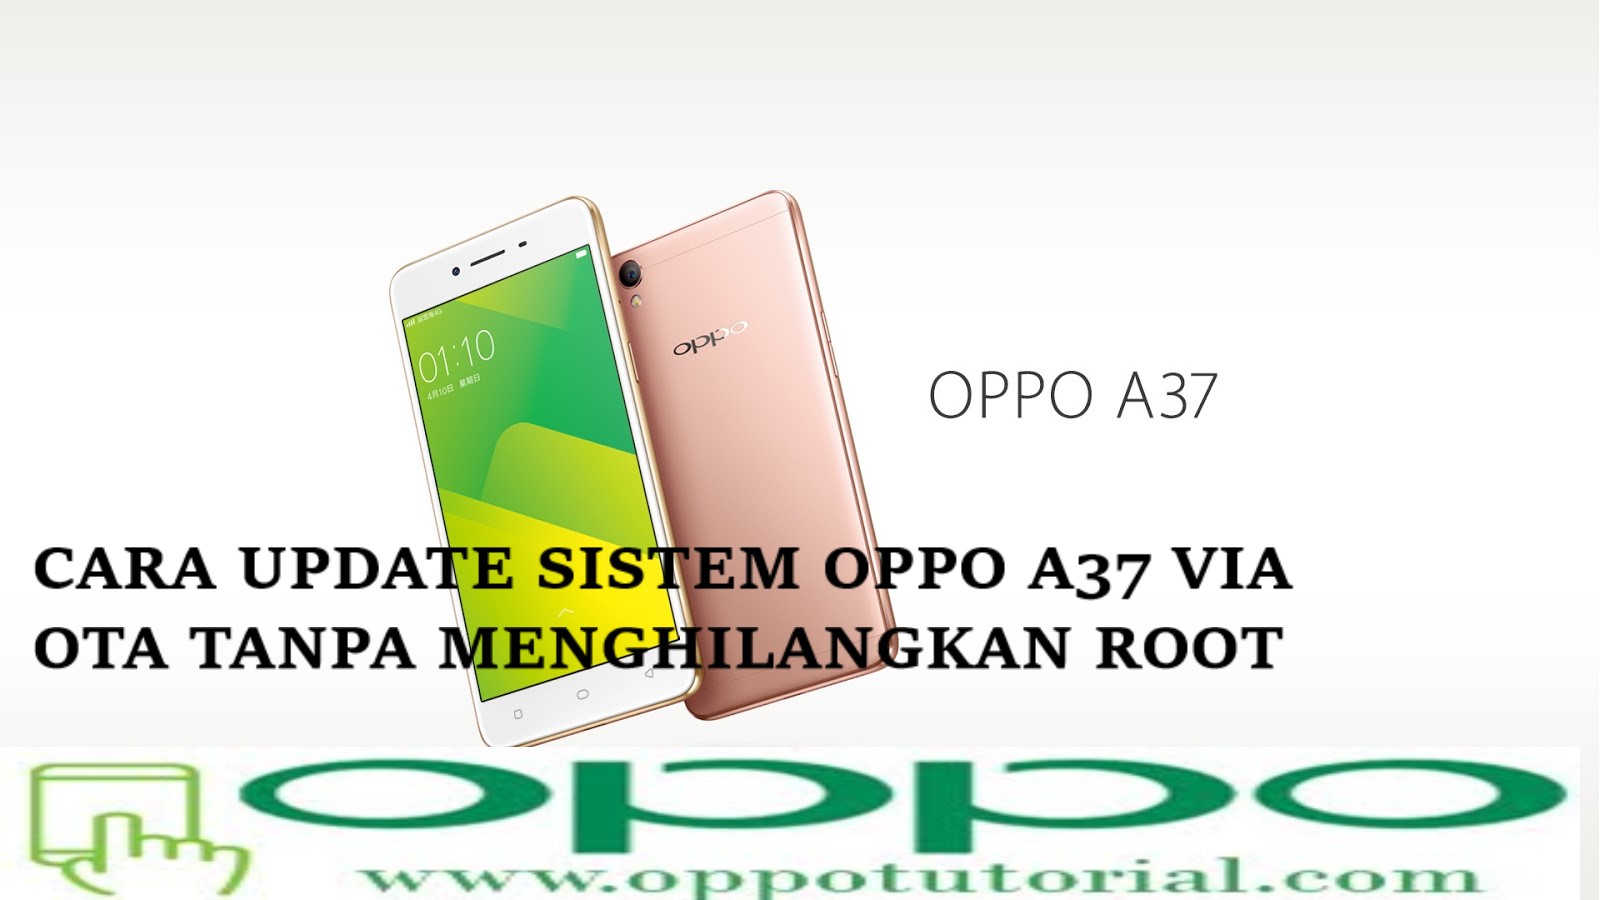 Cara Update Sistem Oppo A37 Via Ota Tanpa Menghilangkan Root Info Selaras